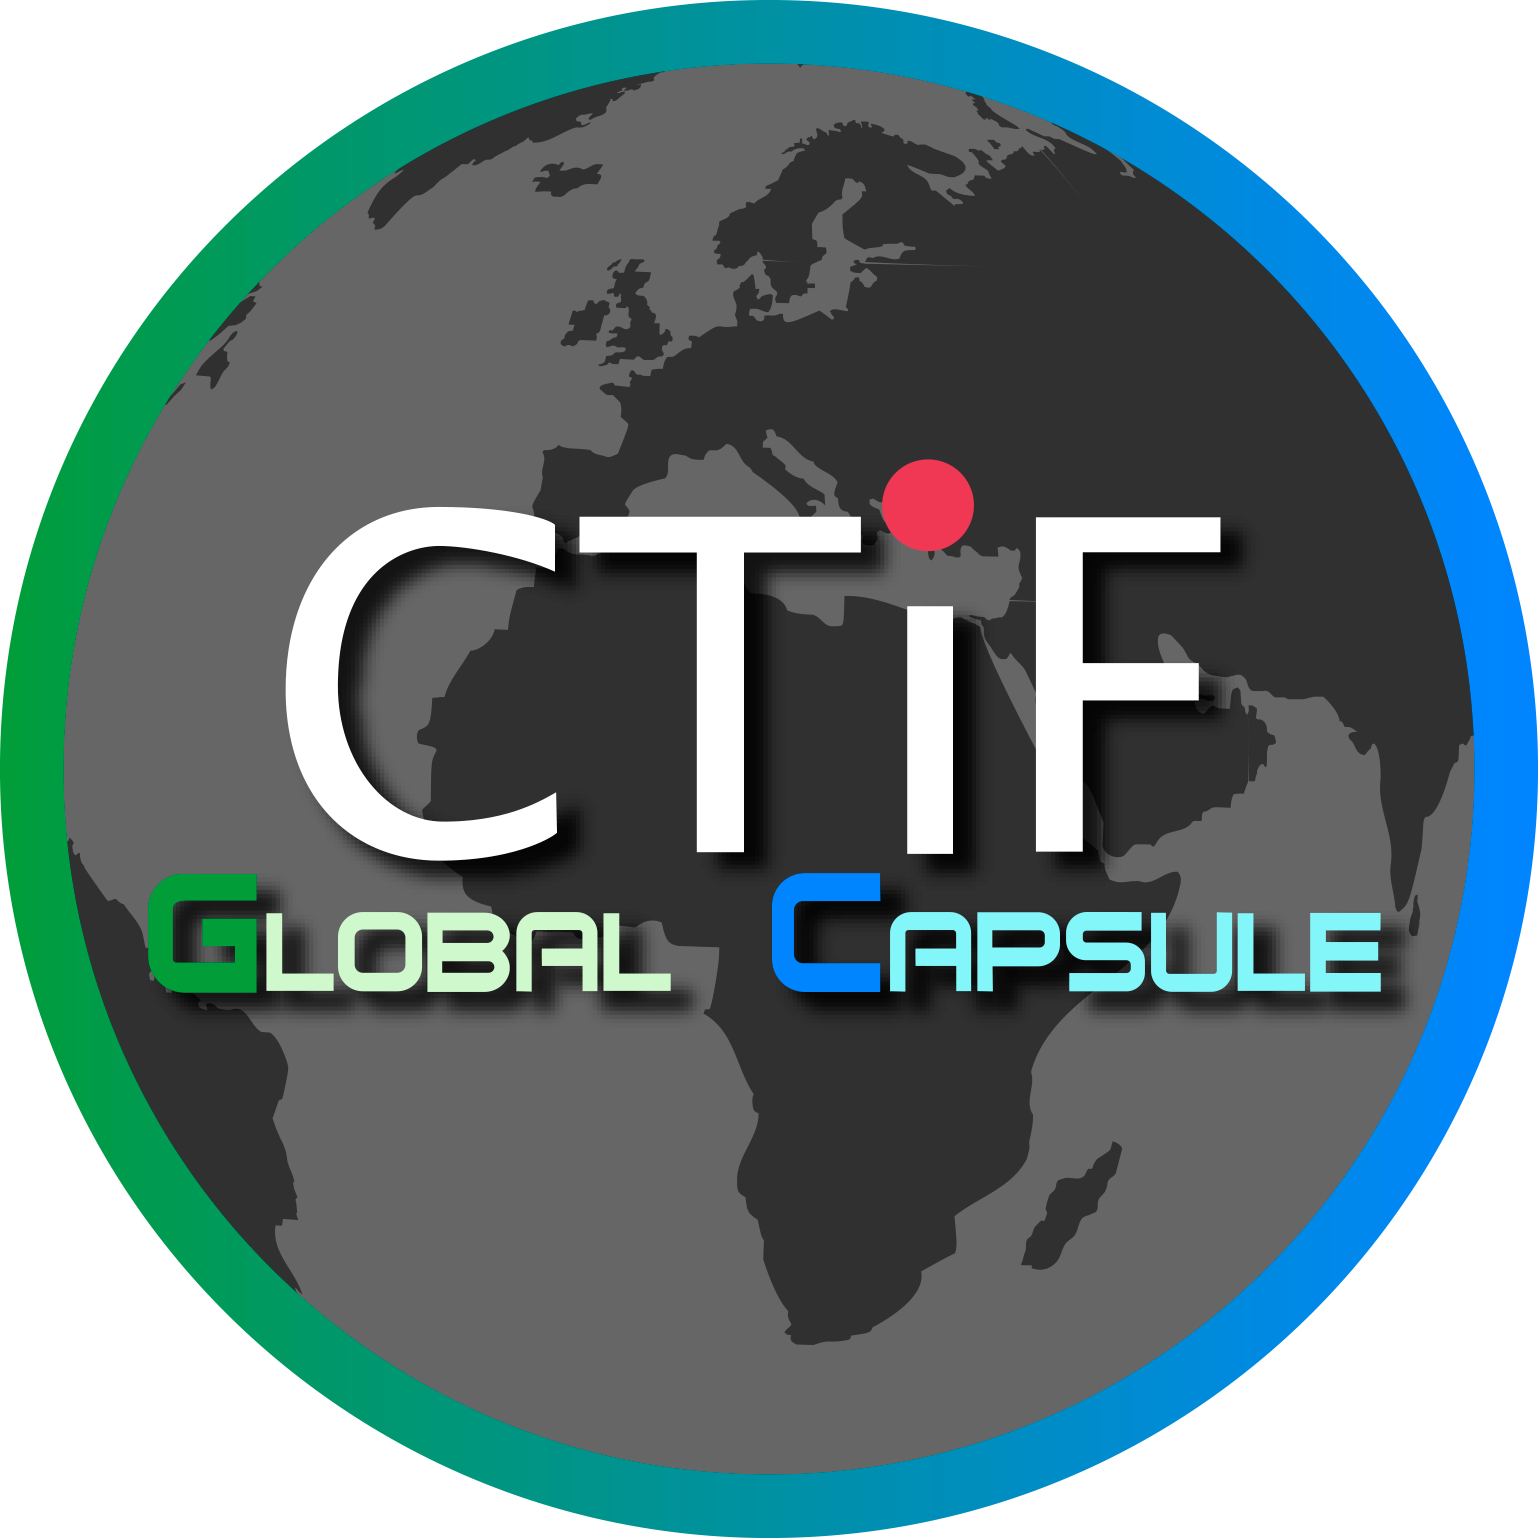 Ctif Global Capsule